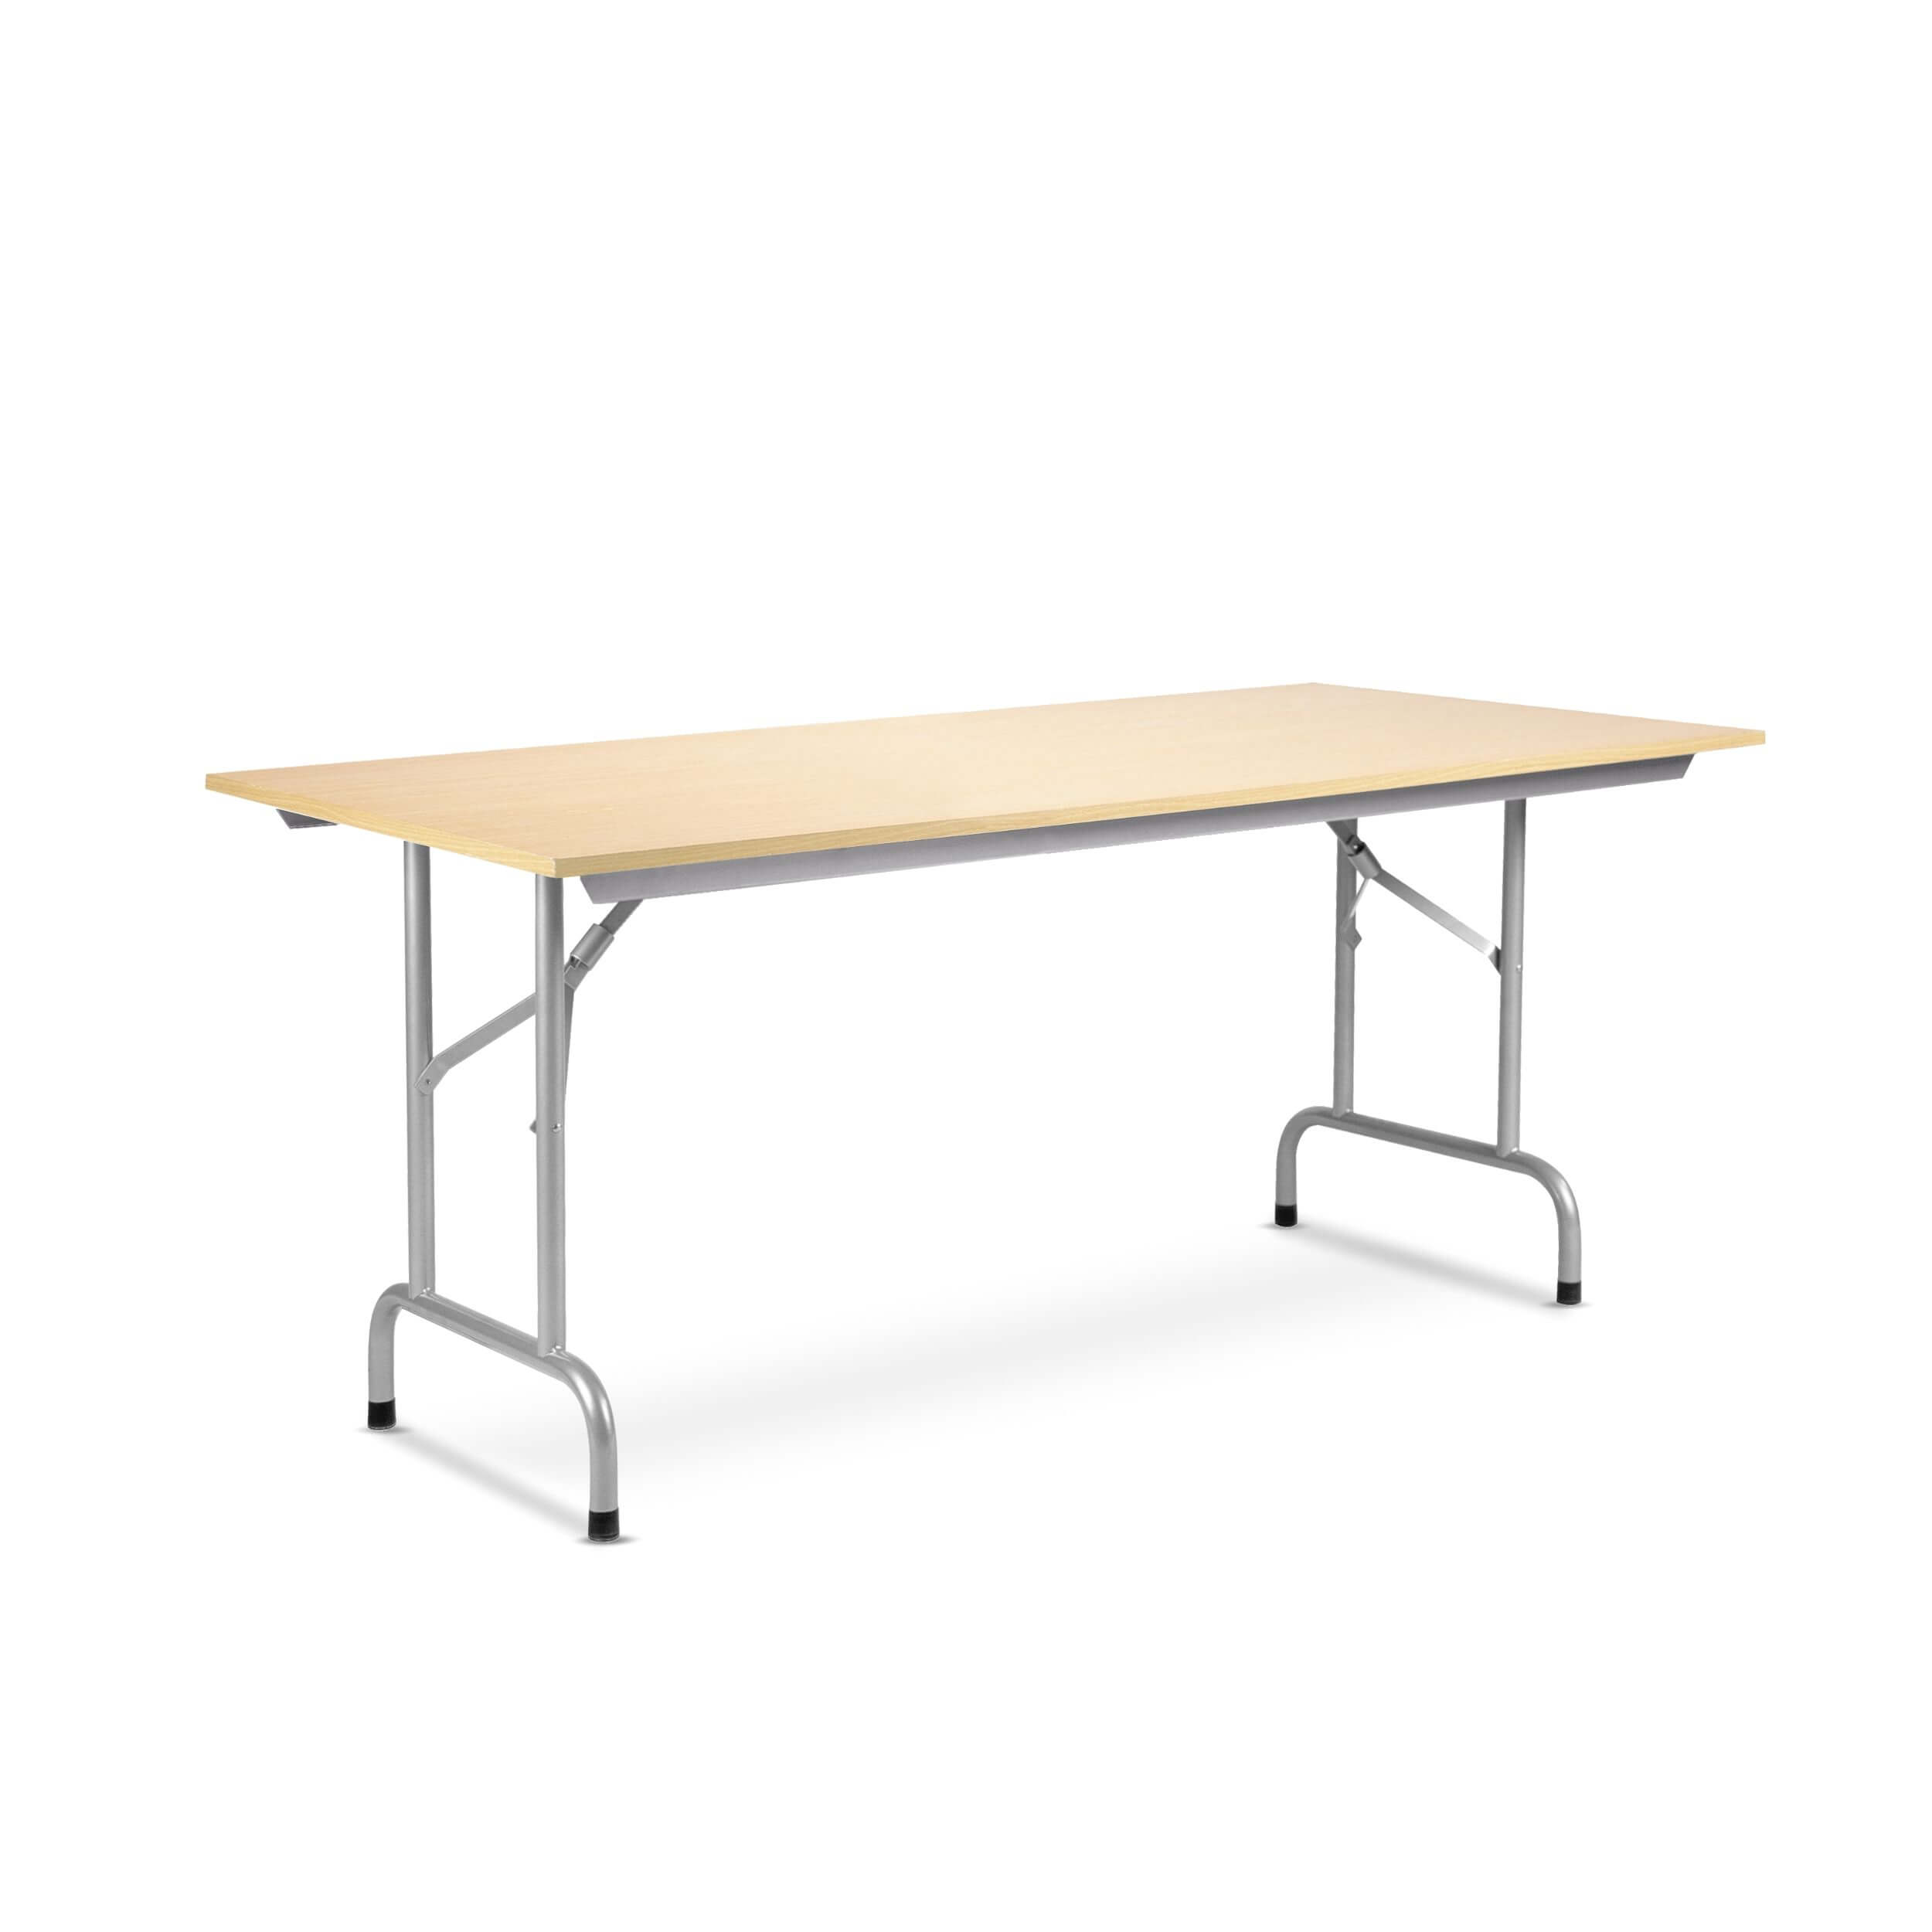 Tvirtas sudedamas stalas Rico-3 180x80 cm su stalviršiu iš drožlių plokštės.